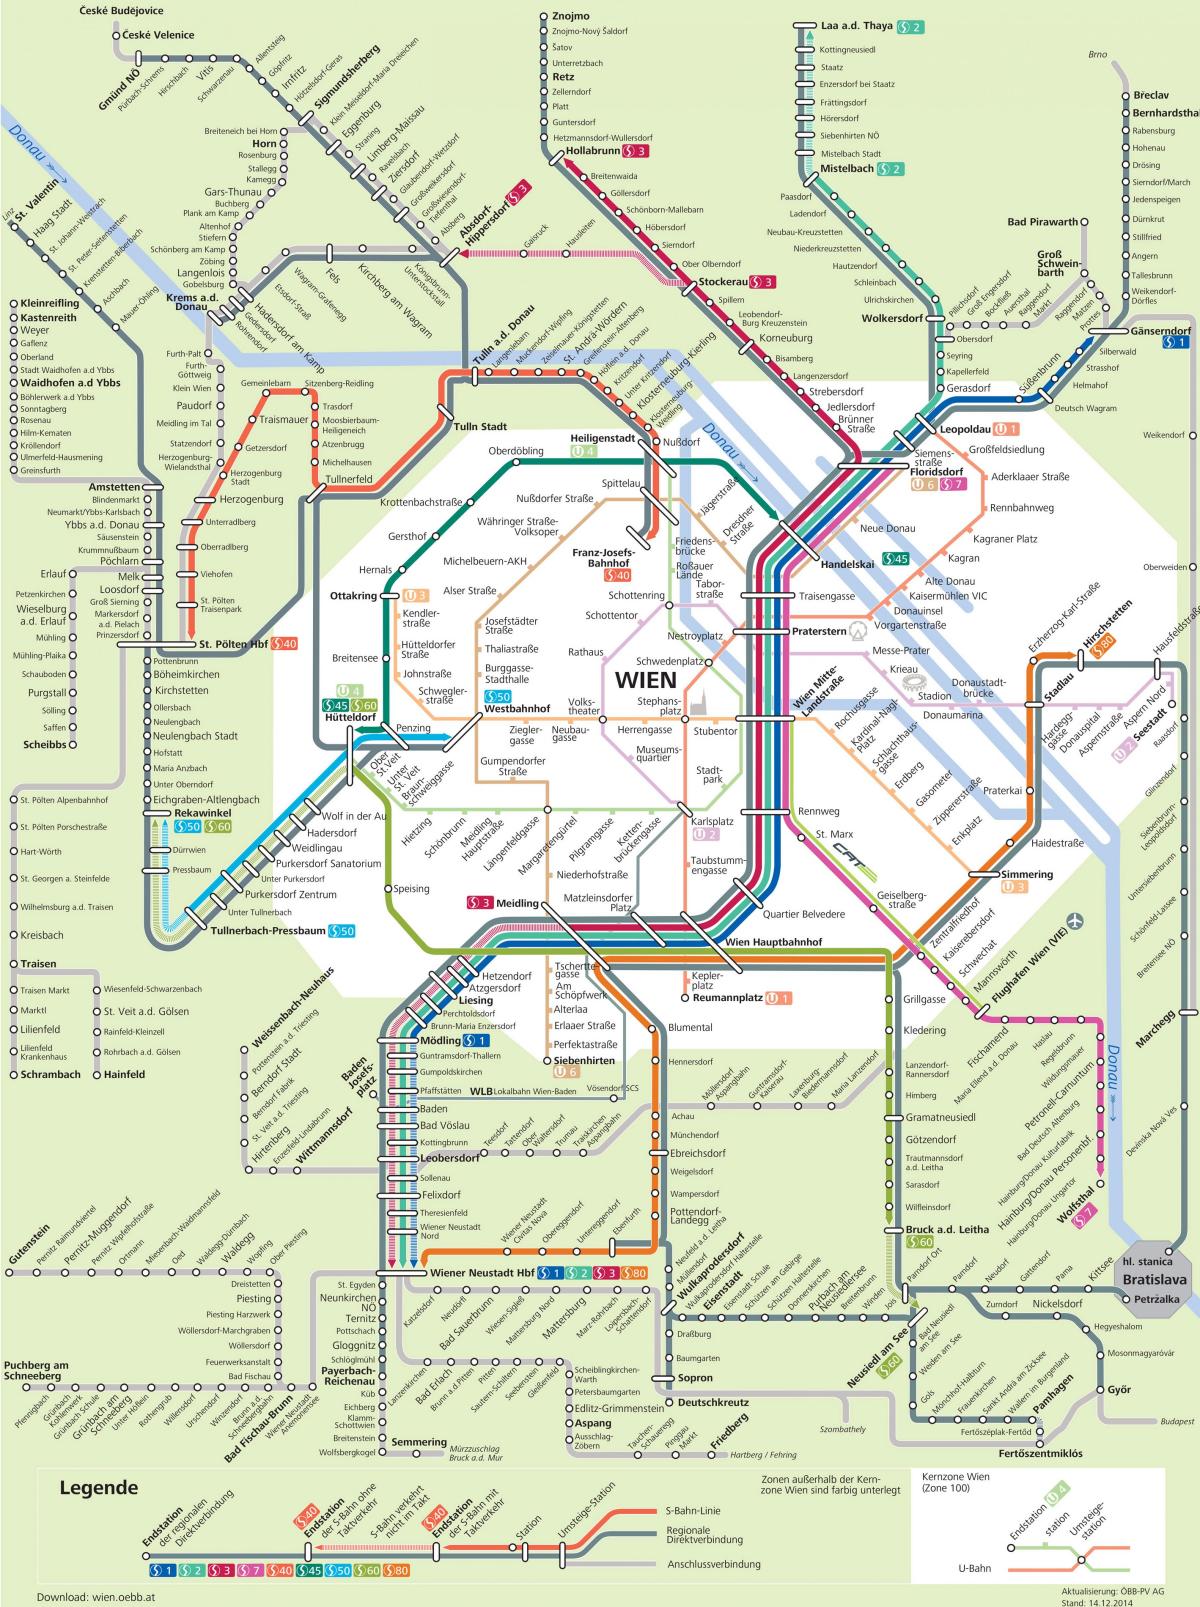 Mapa ng Vienna s7 ruta